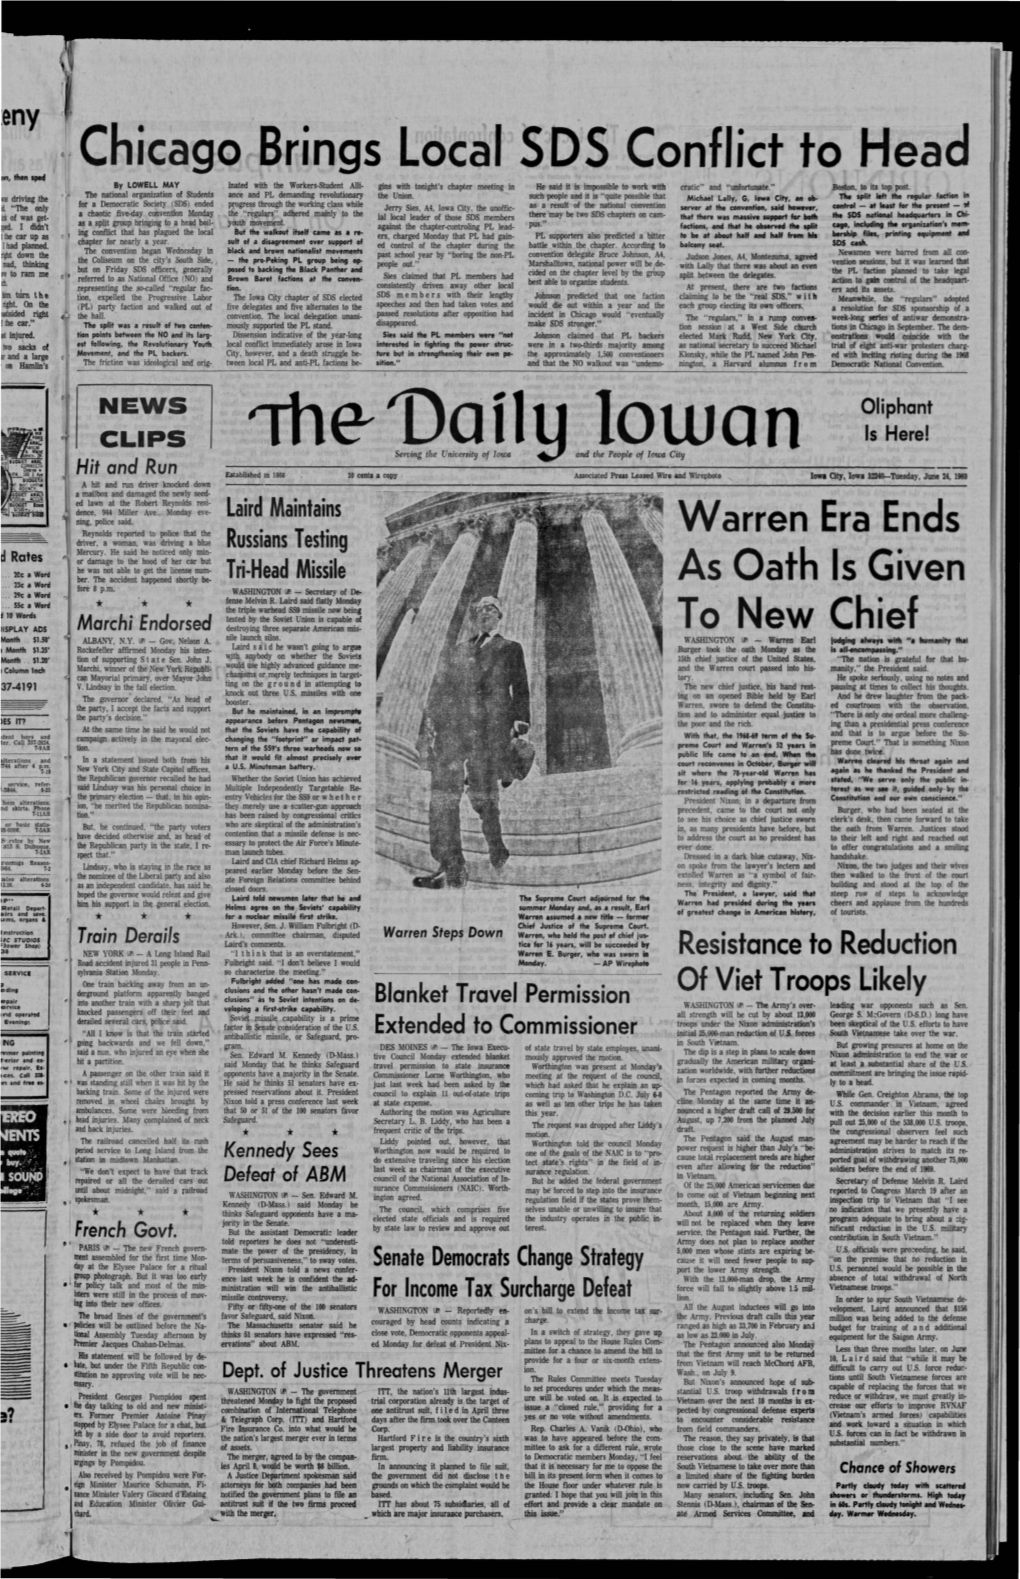 Daily Iowan (Iowa City, Iowa), 1969-06-24